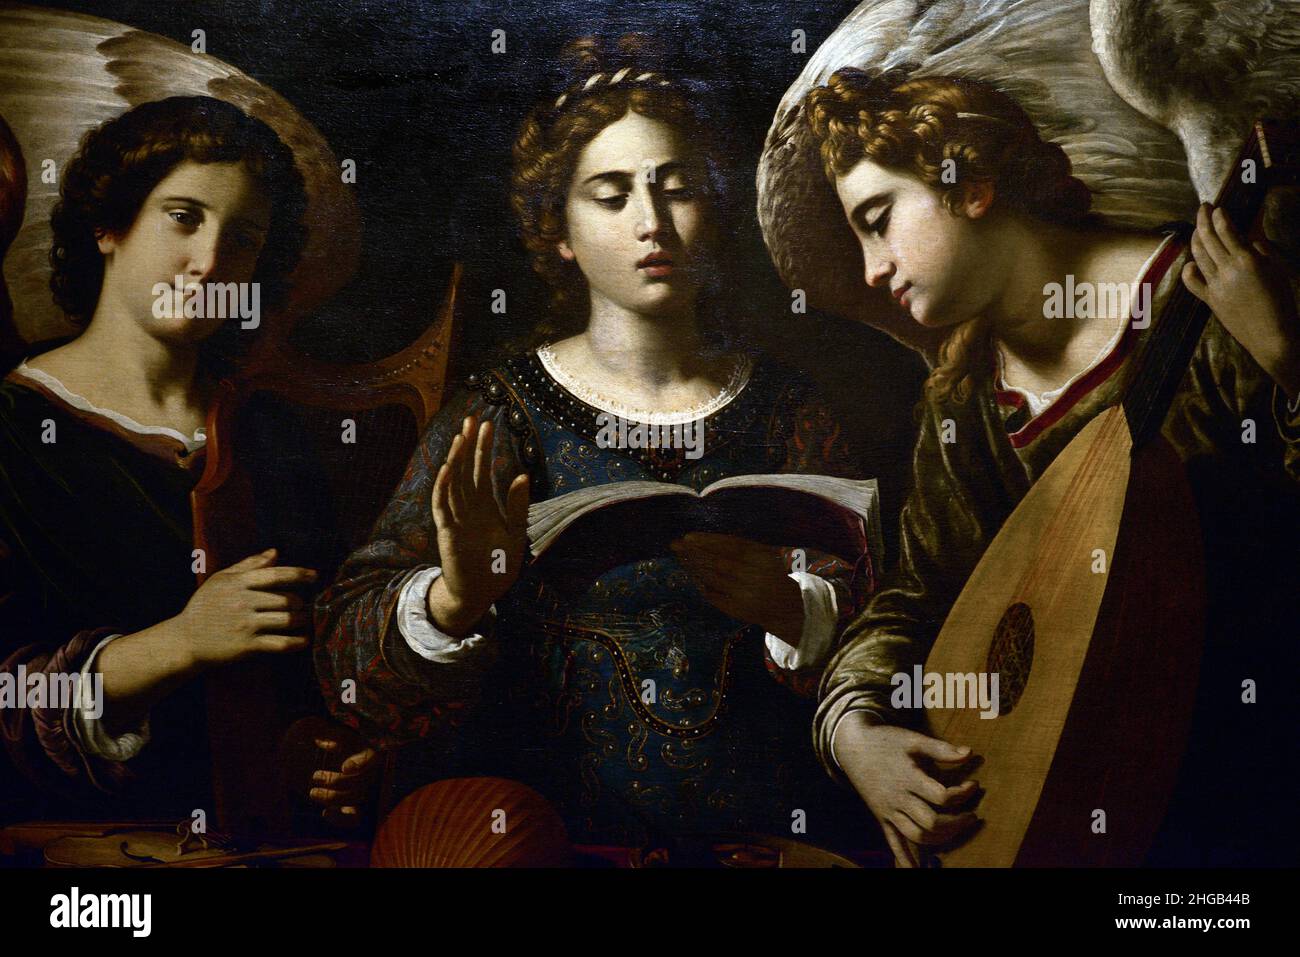 Antiveduto Grammatica (1571-1626). Italienischer Maler. Die heilige Cecilia mit zwei Engeln, um 1620. Details. Öl auf Leinwand (100 x 126 cm). Nationalmuseum für Alte Kunst Lissabon, Portugal. Stockfoto